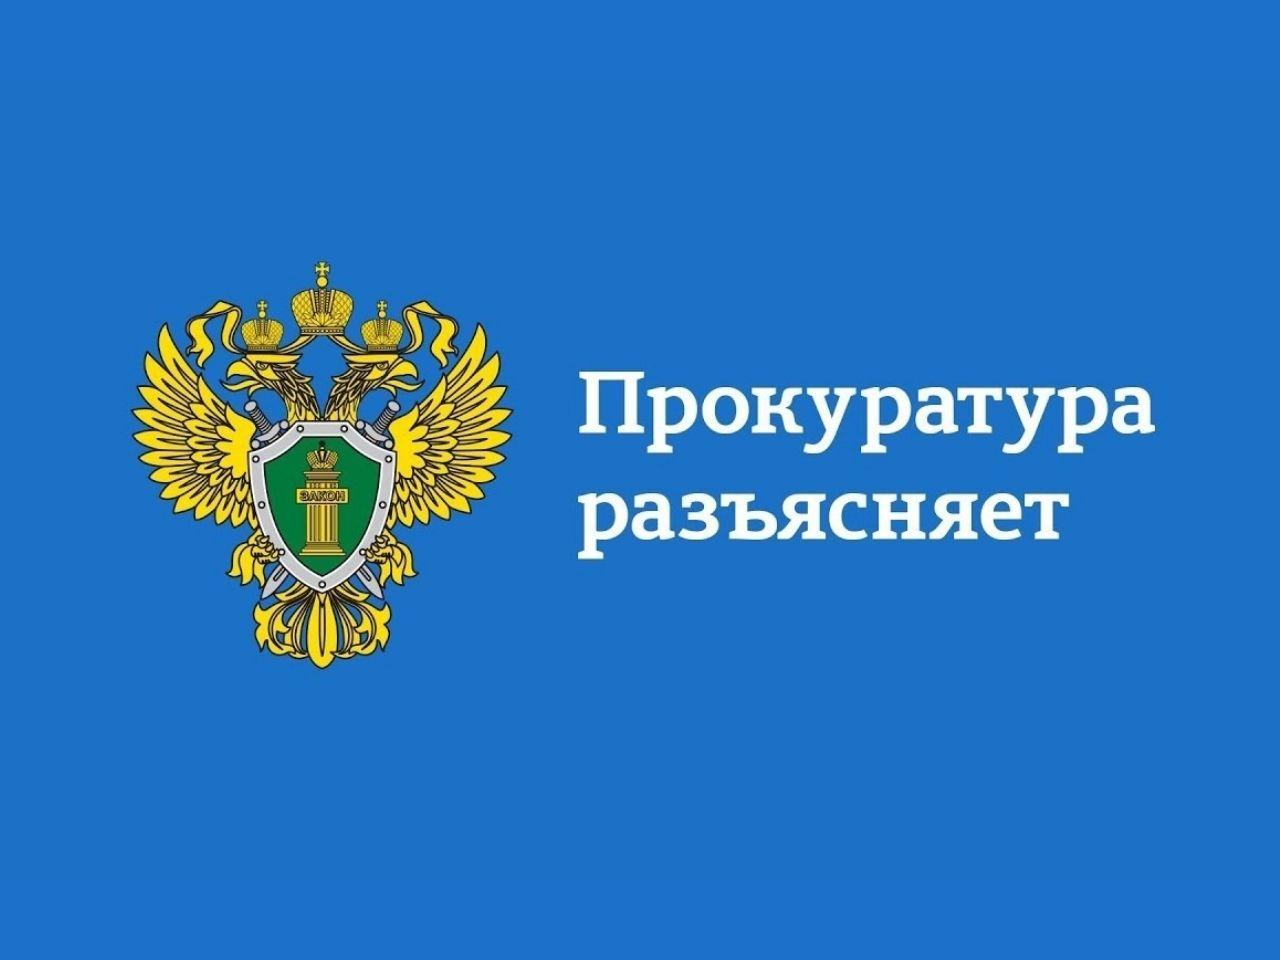 Прокуратура Мелекесского района информирует, что 07.06.2023 на заседании Законодательного Собрания  утверждены изменения в закон, регулирующий социальную поддержку многодетных граждан в Ульяновской области..